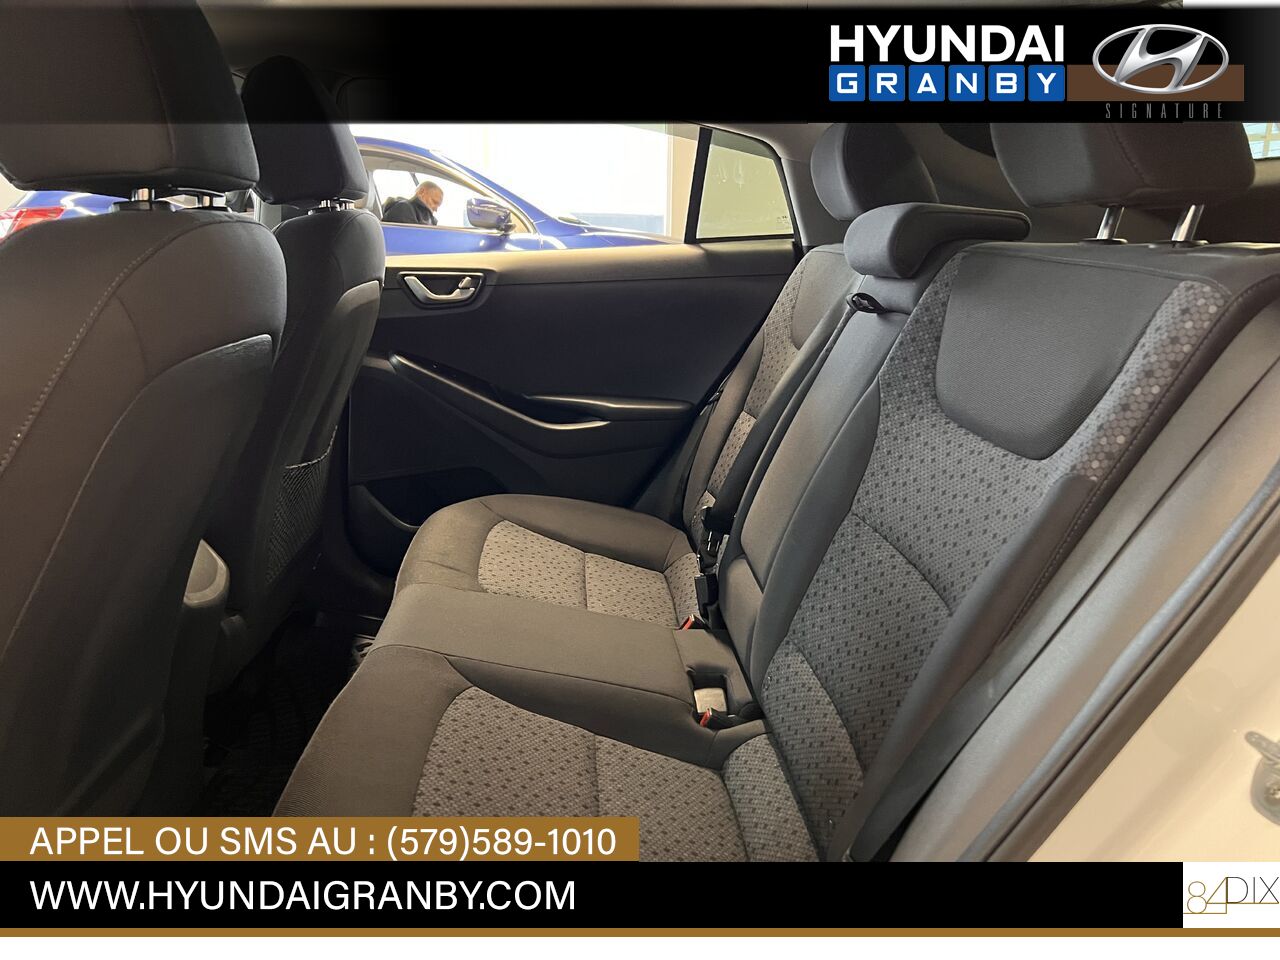 2017 Hyundai Ioniq hybride Granby - photo #33